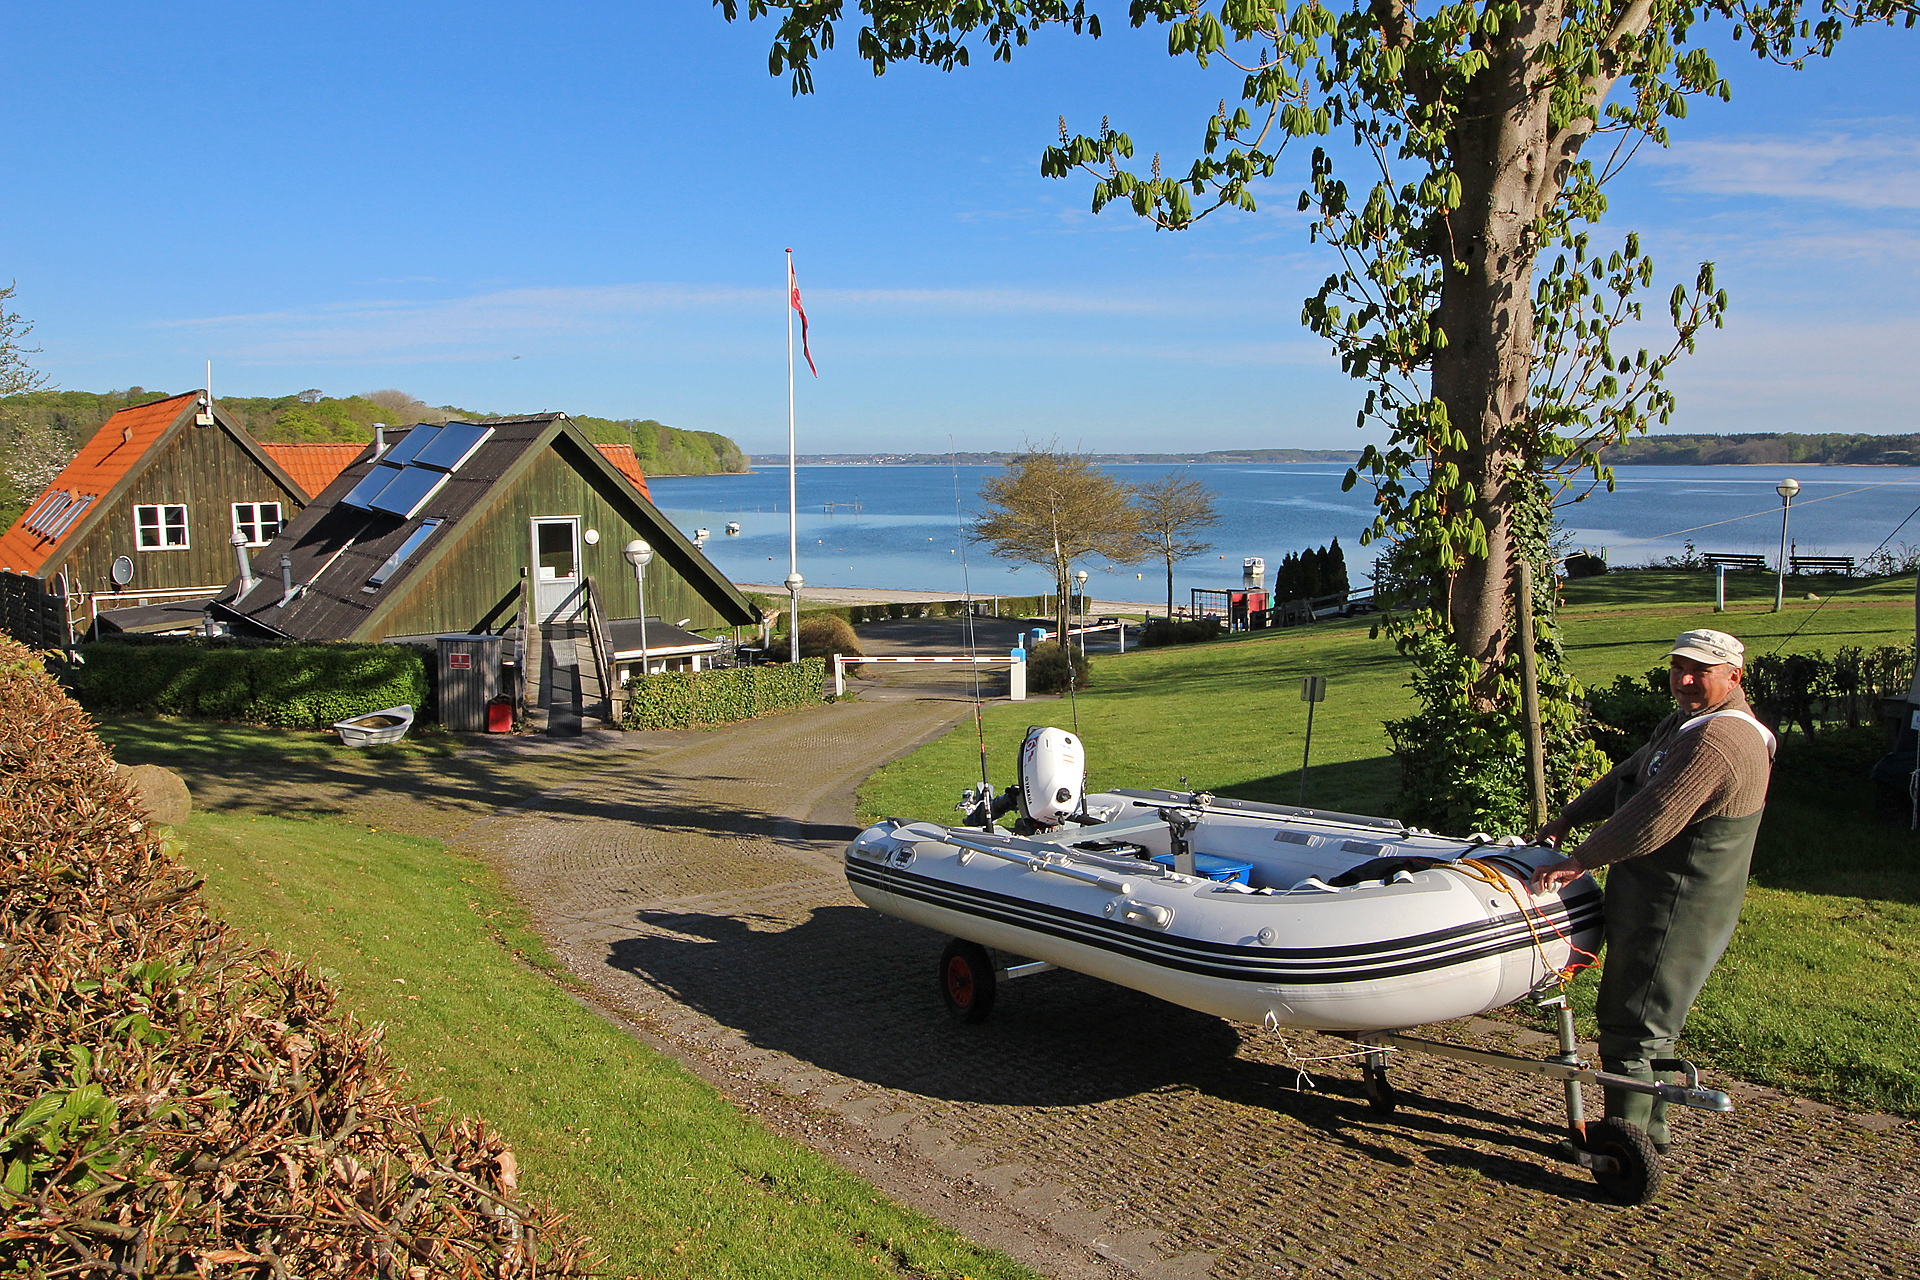 Angelurlaub in Dänemark mit Boot